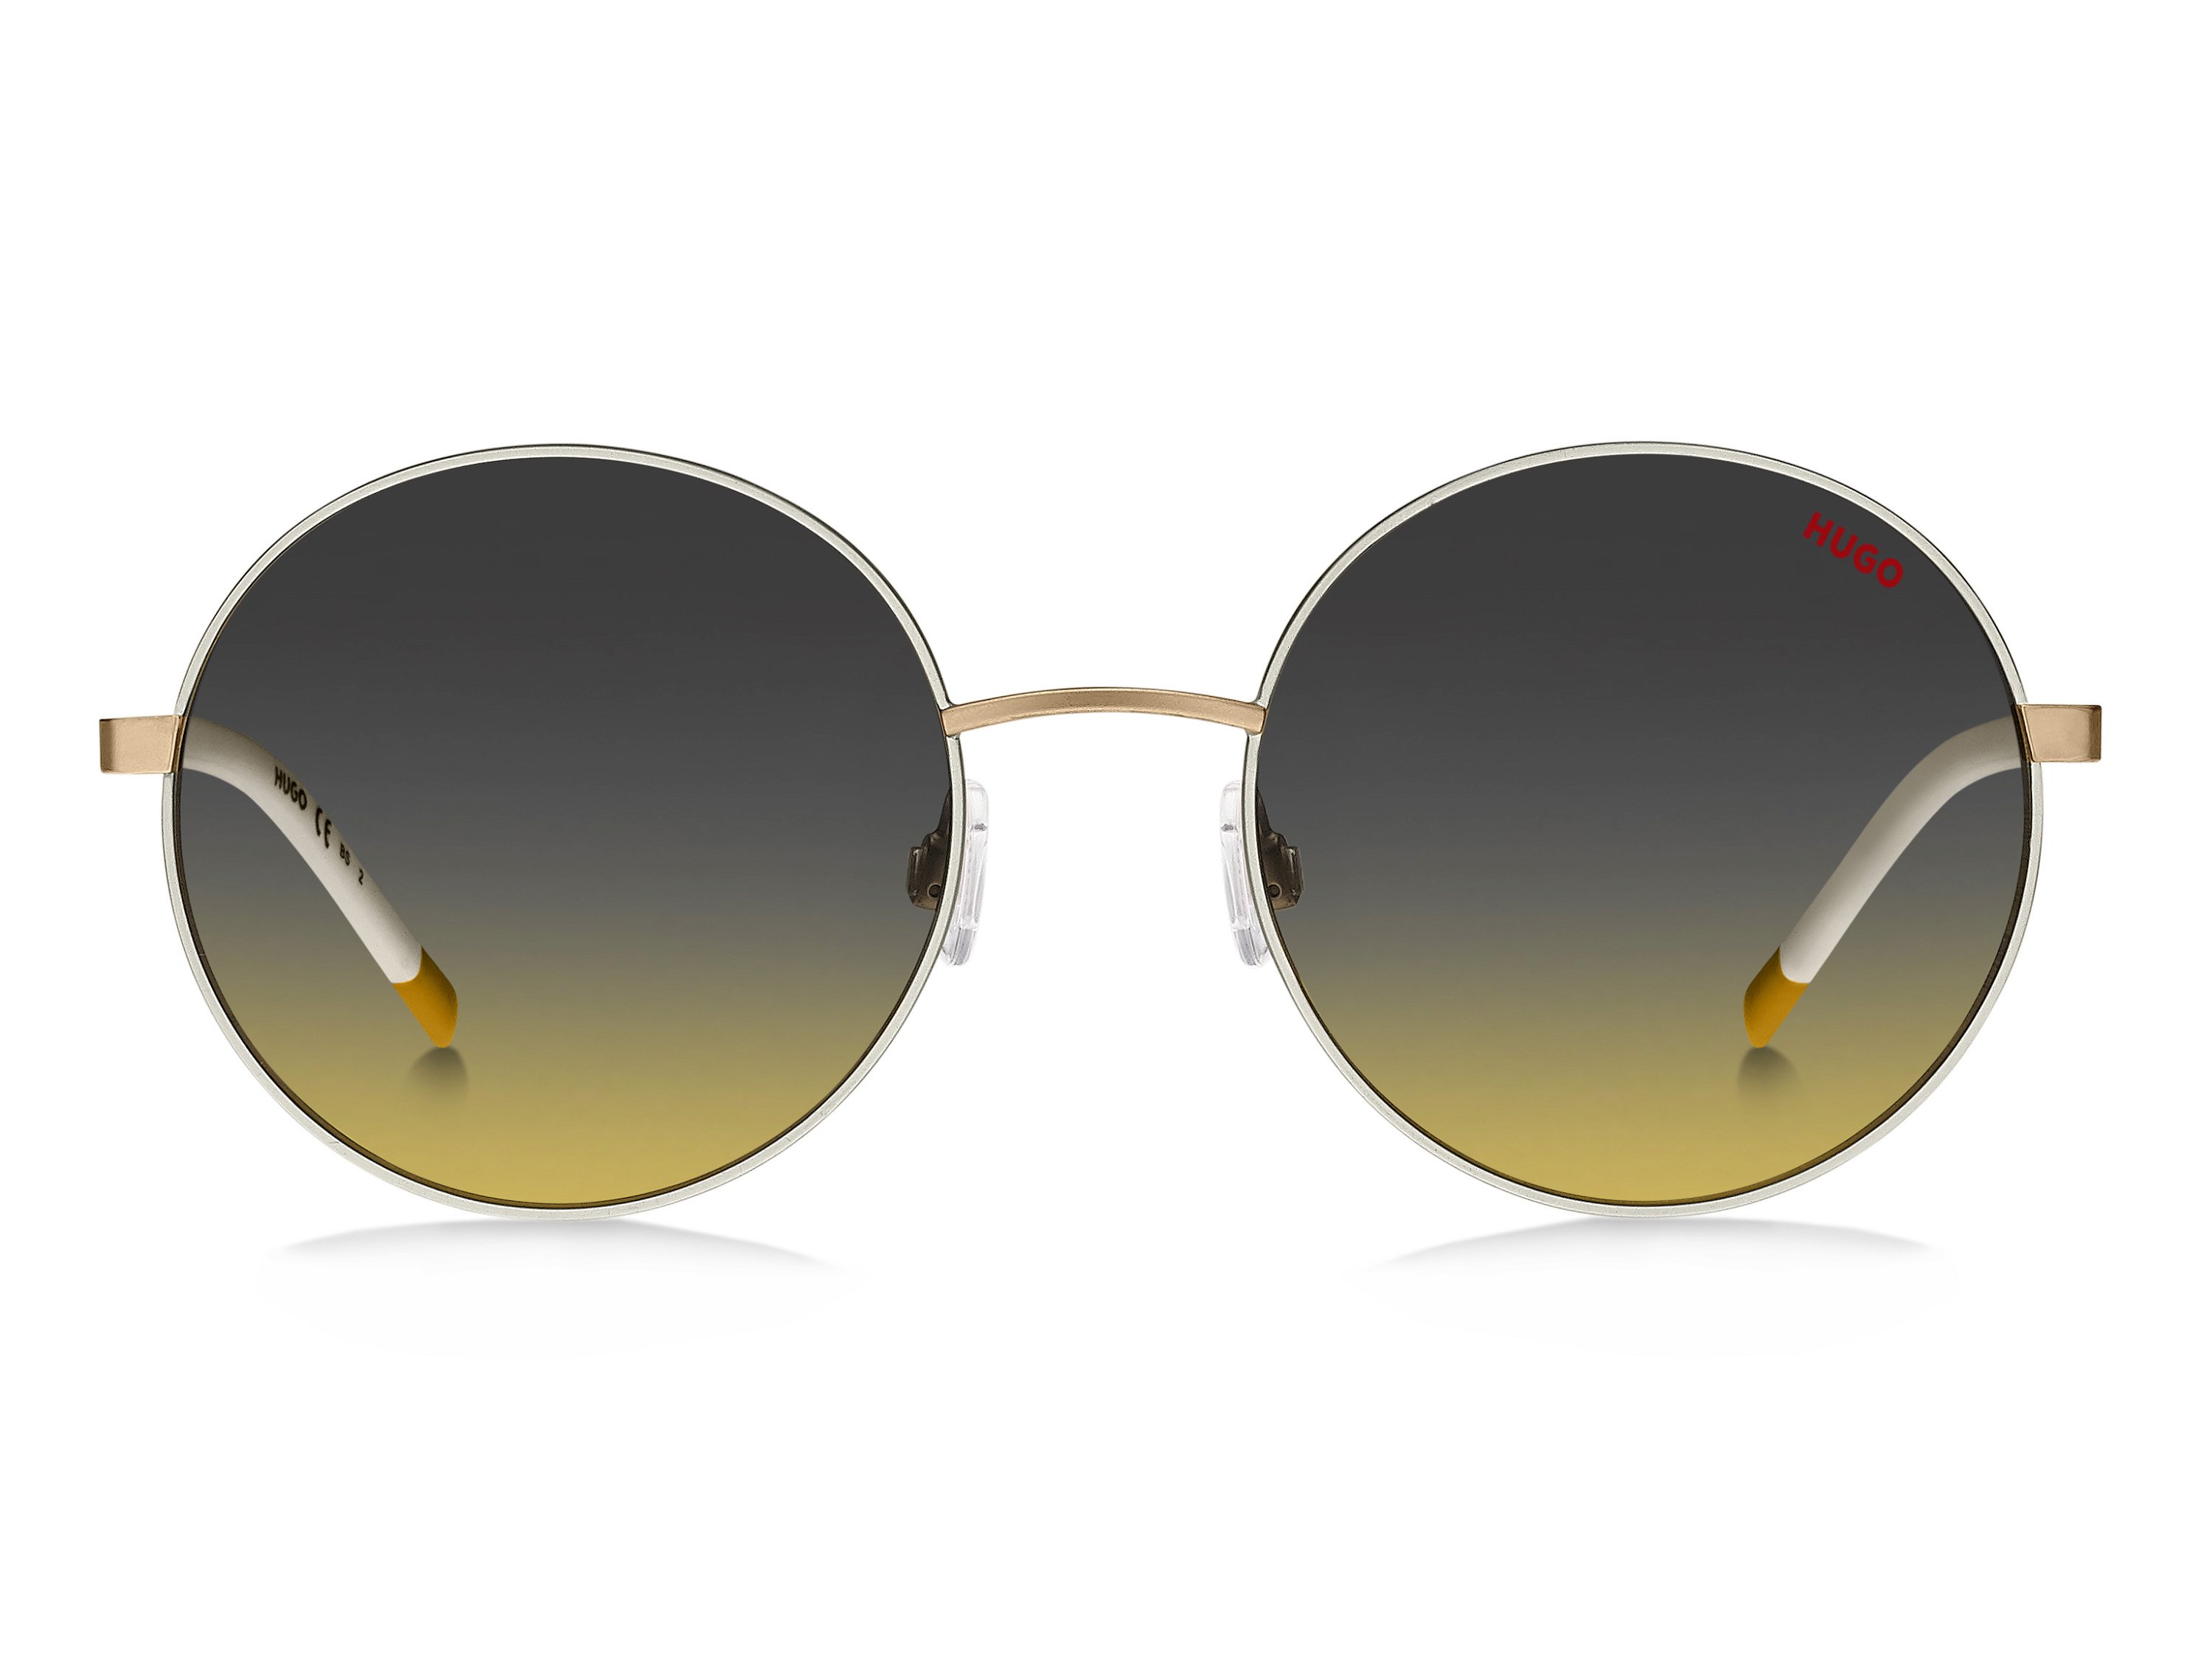 Das Bild zeigt die Sonnenbrille HG1237/S B4E von der Marke Hugo in gold.